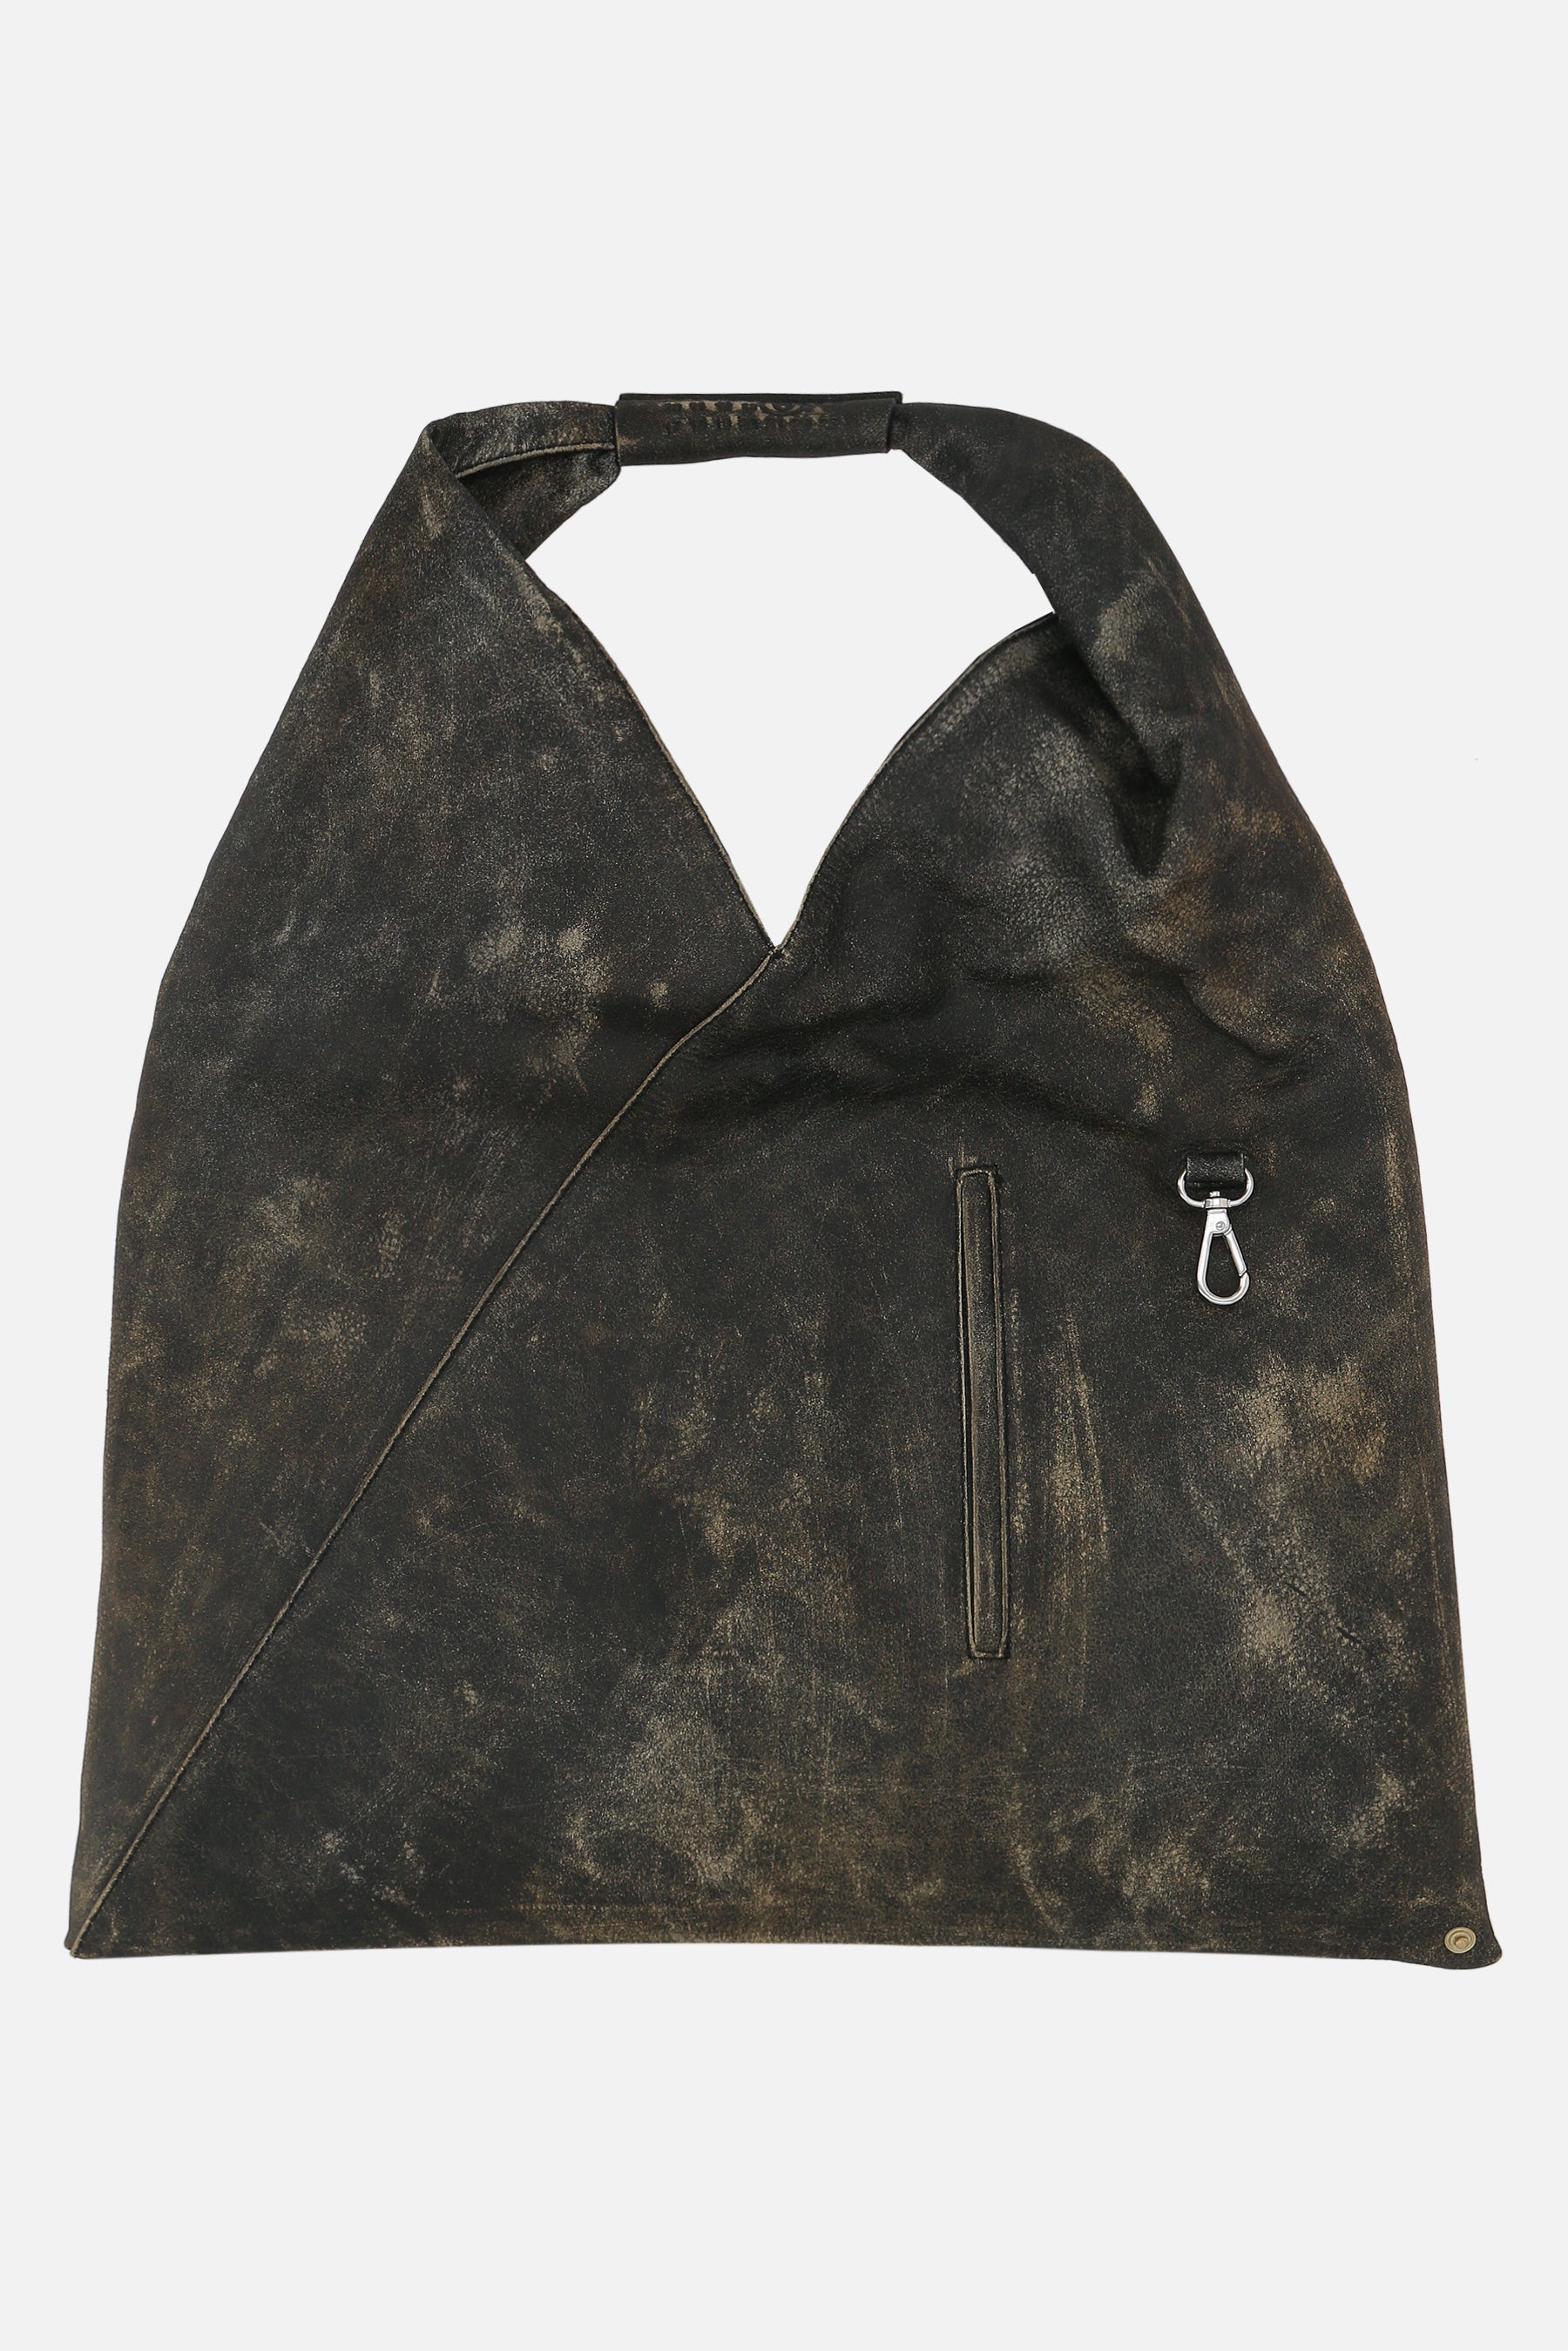 Japanese medium distressed leather handbag